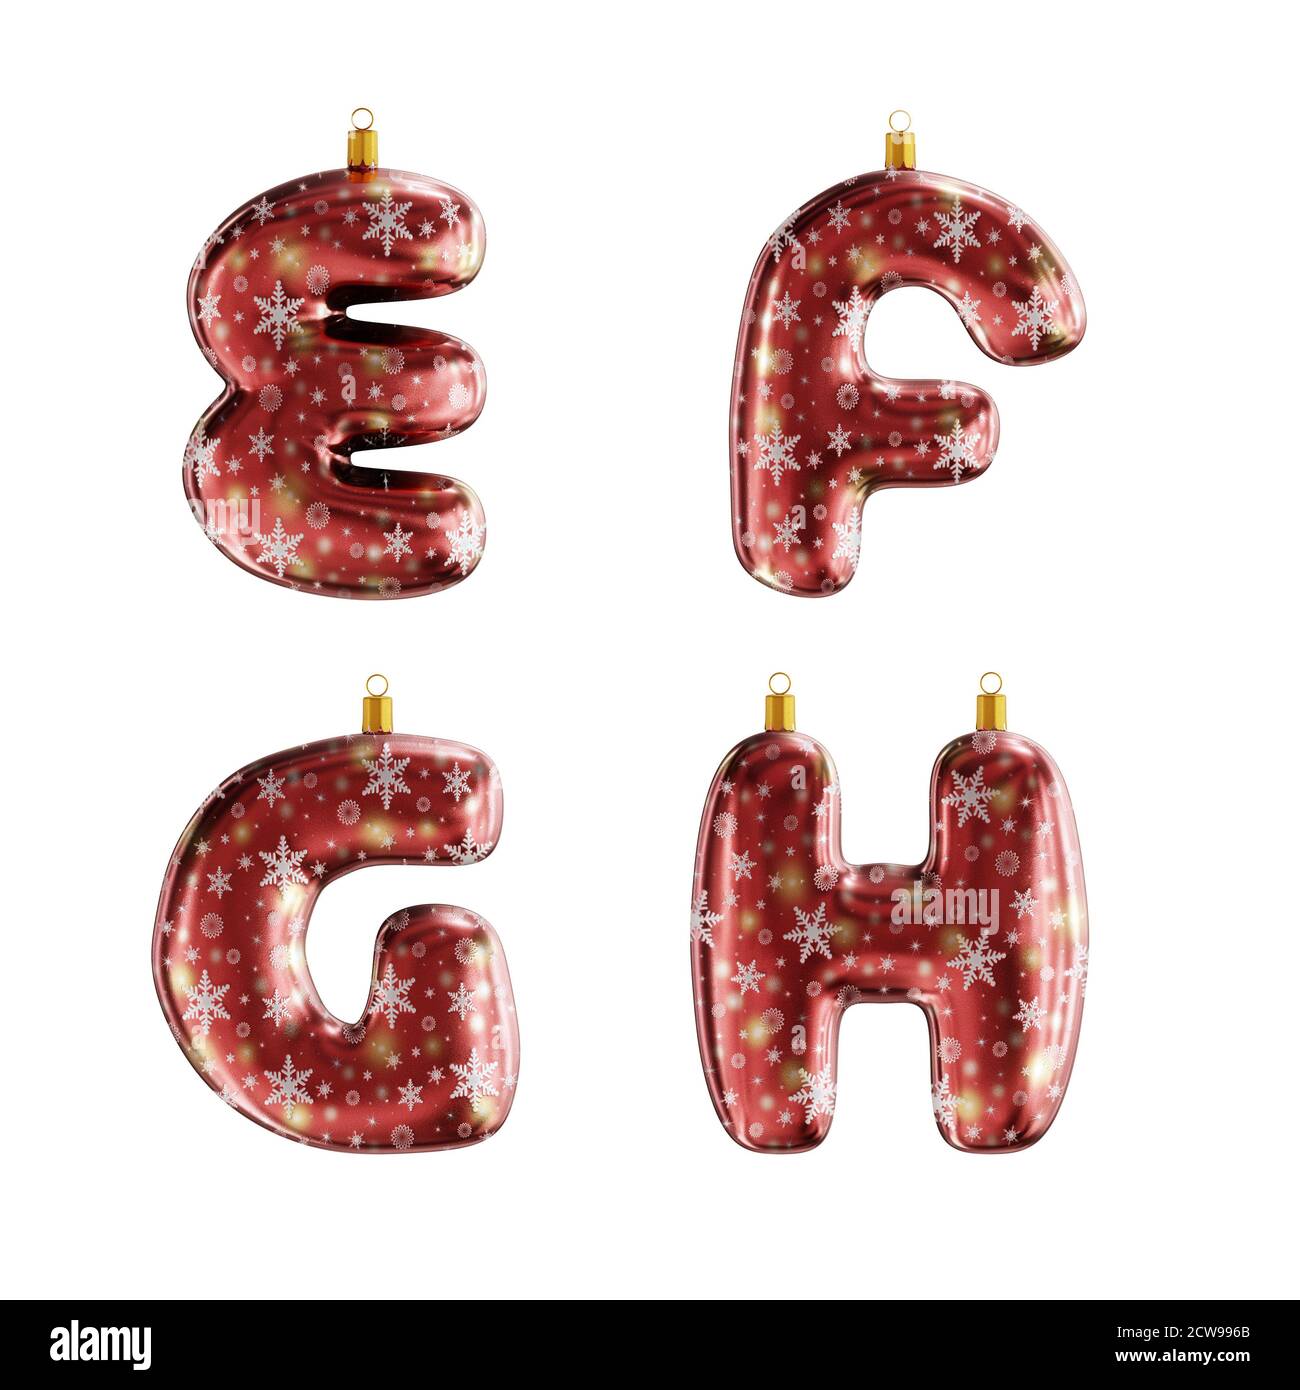 3D-Rendering von roten weihnachtsschmuck Alphabet auf weiß geschossen - Buchstaben A-D Stockfoto